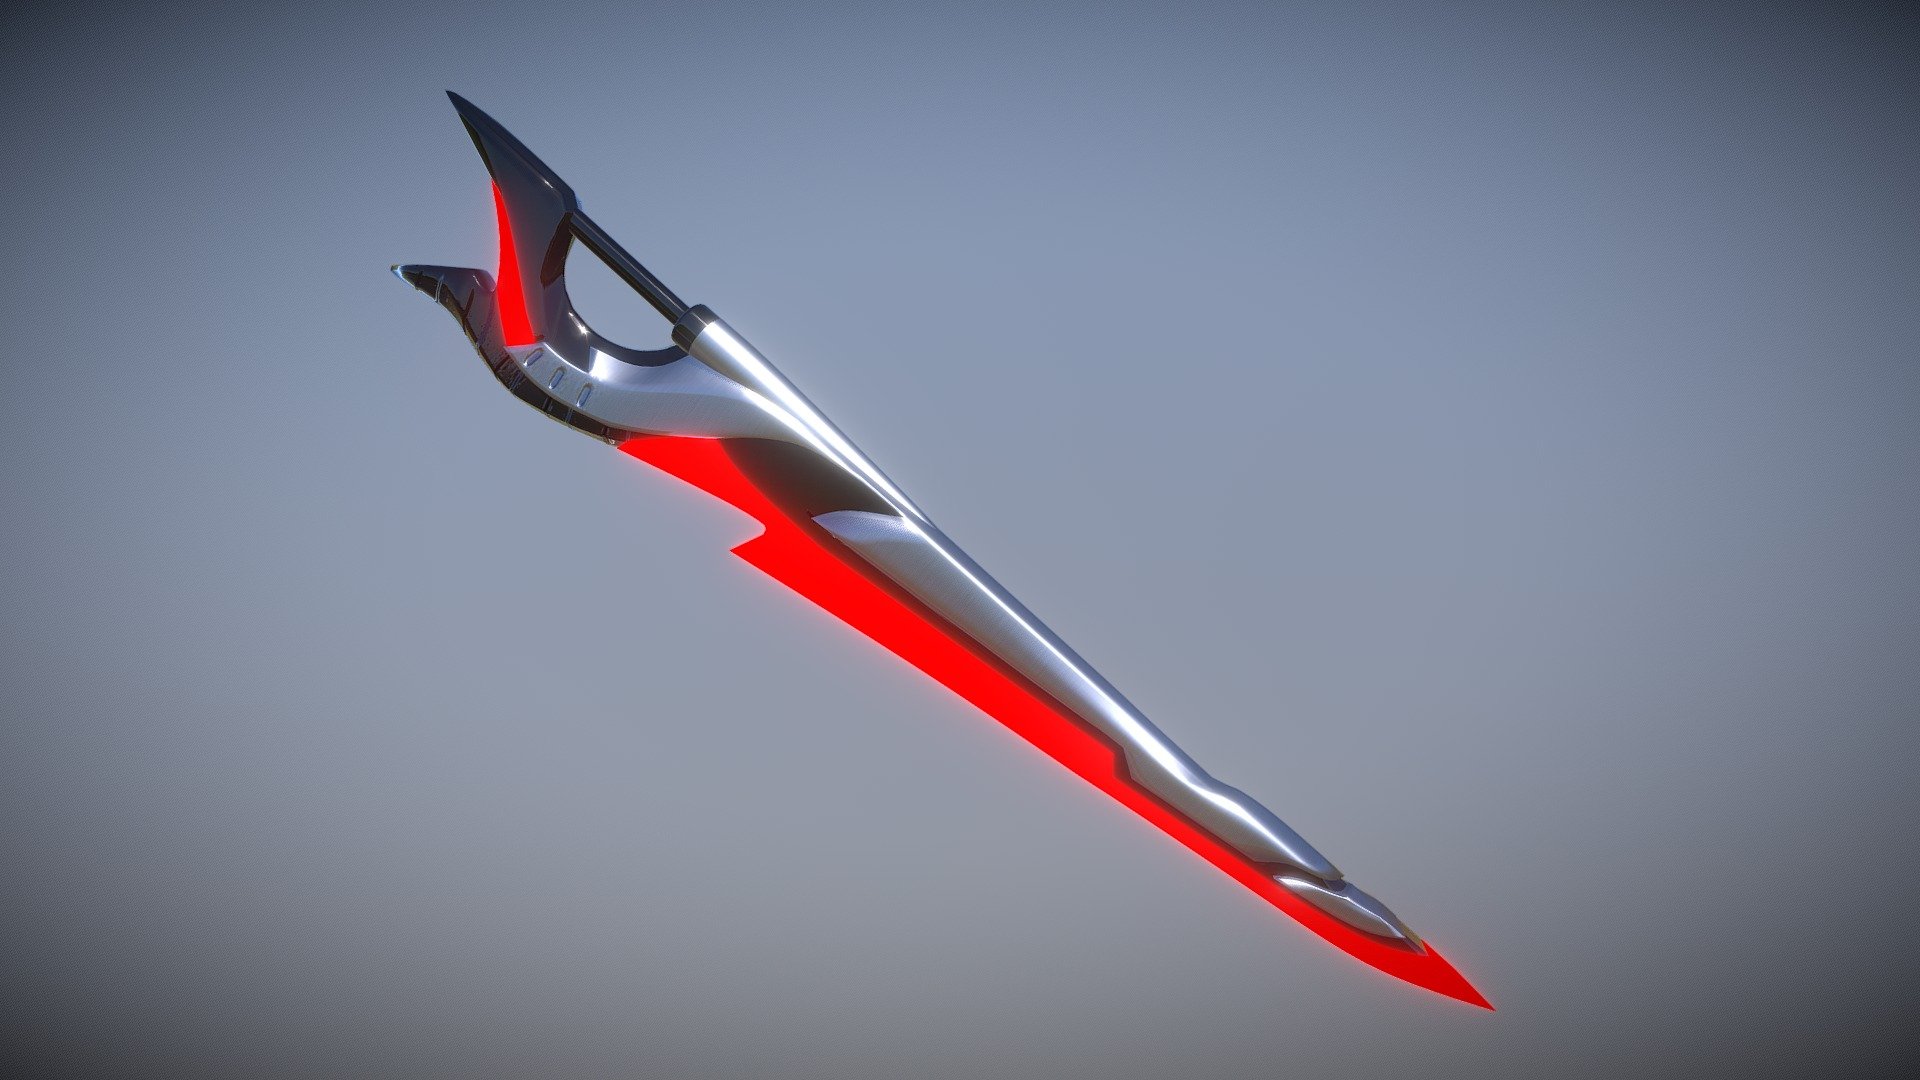 Sci-fi Sword from https://id.pinterest.com/pin/356769601714939426/ - Sci-Fi Sword - 3D model by Raikogen 3d model